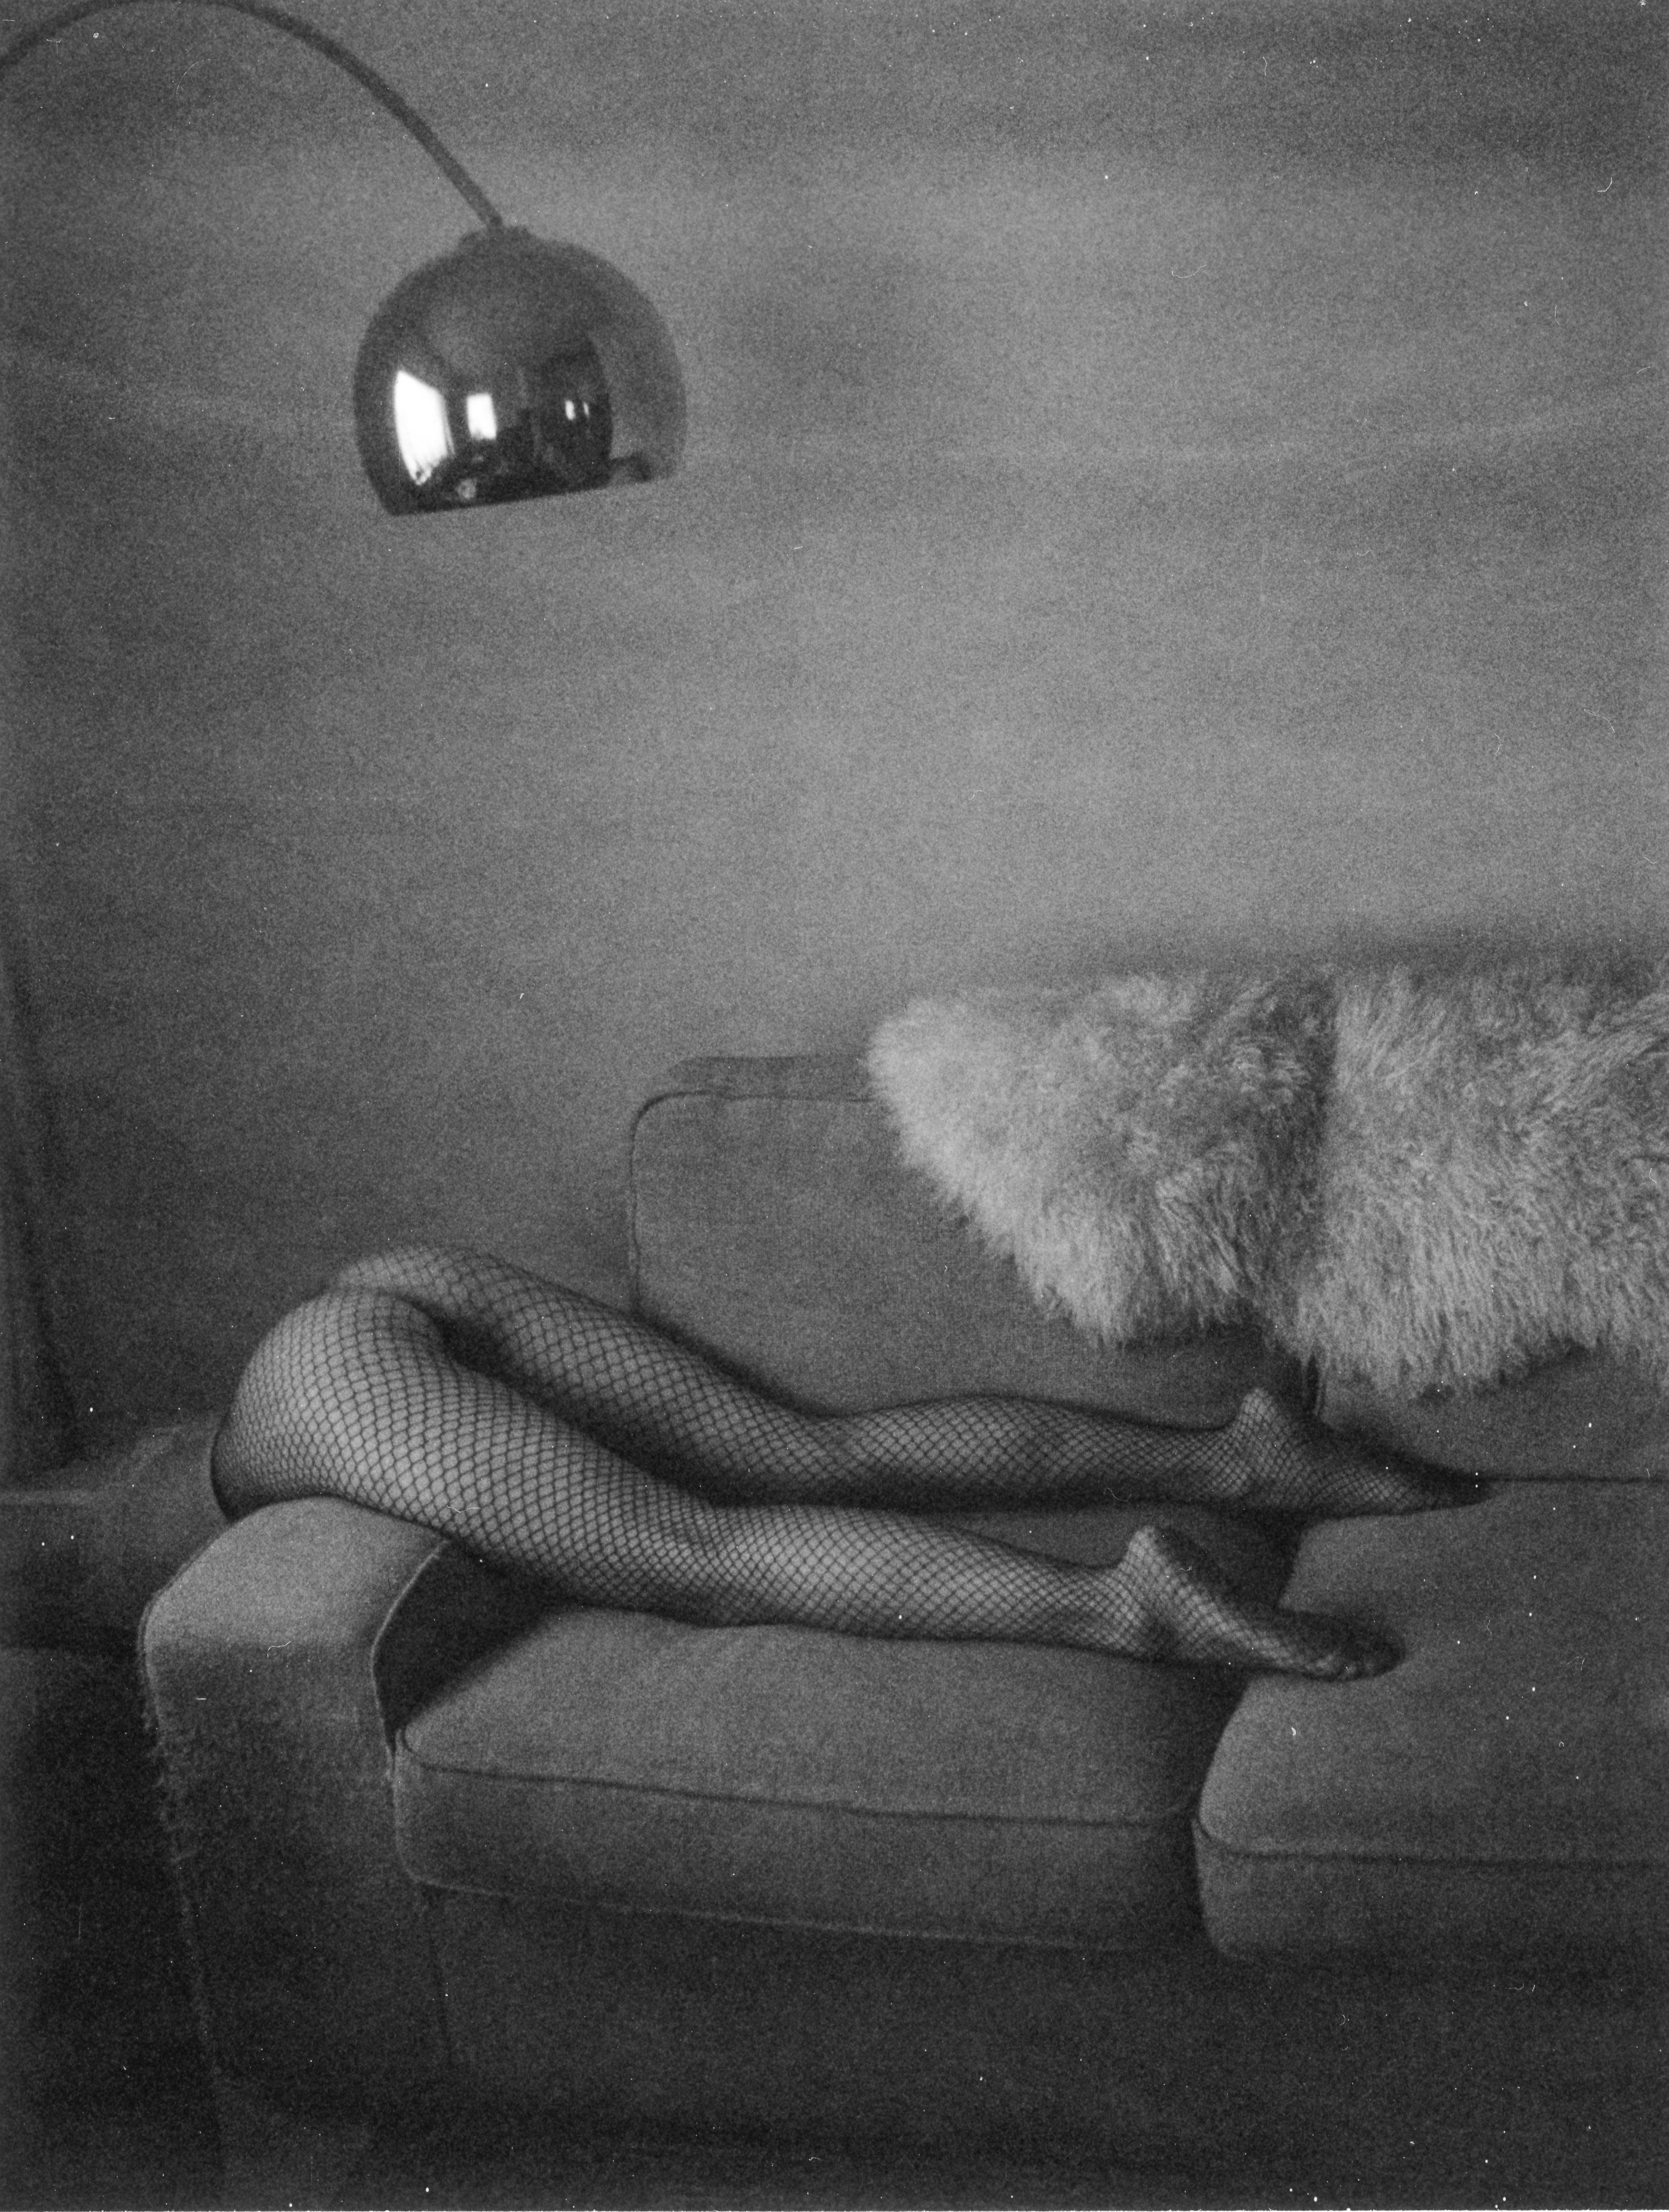 Nude Photograph Kirsten Thys van den Audenaerde - Styrofoam - Contemporary, Nude, Women, Polaroid, 21st Century